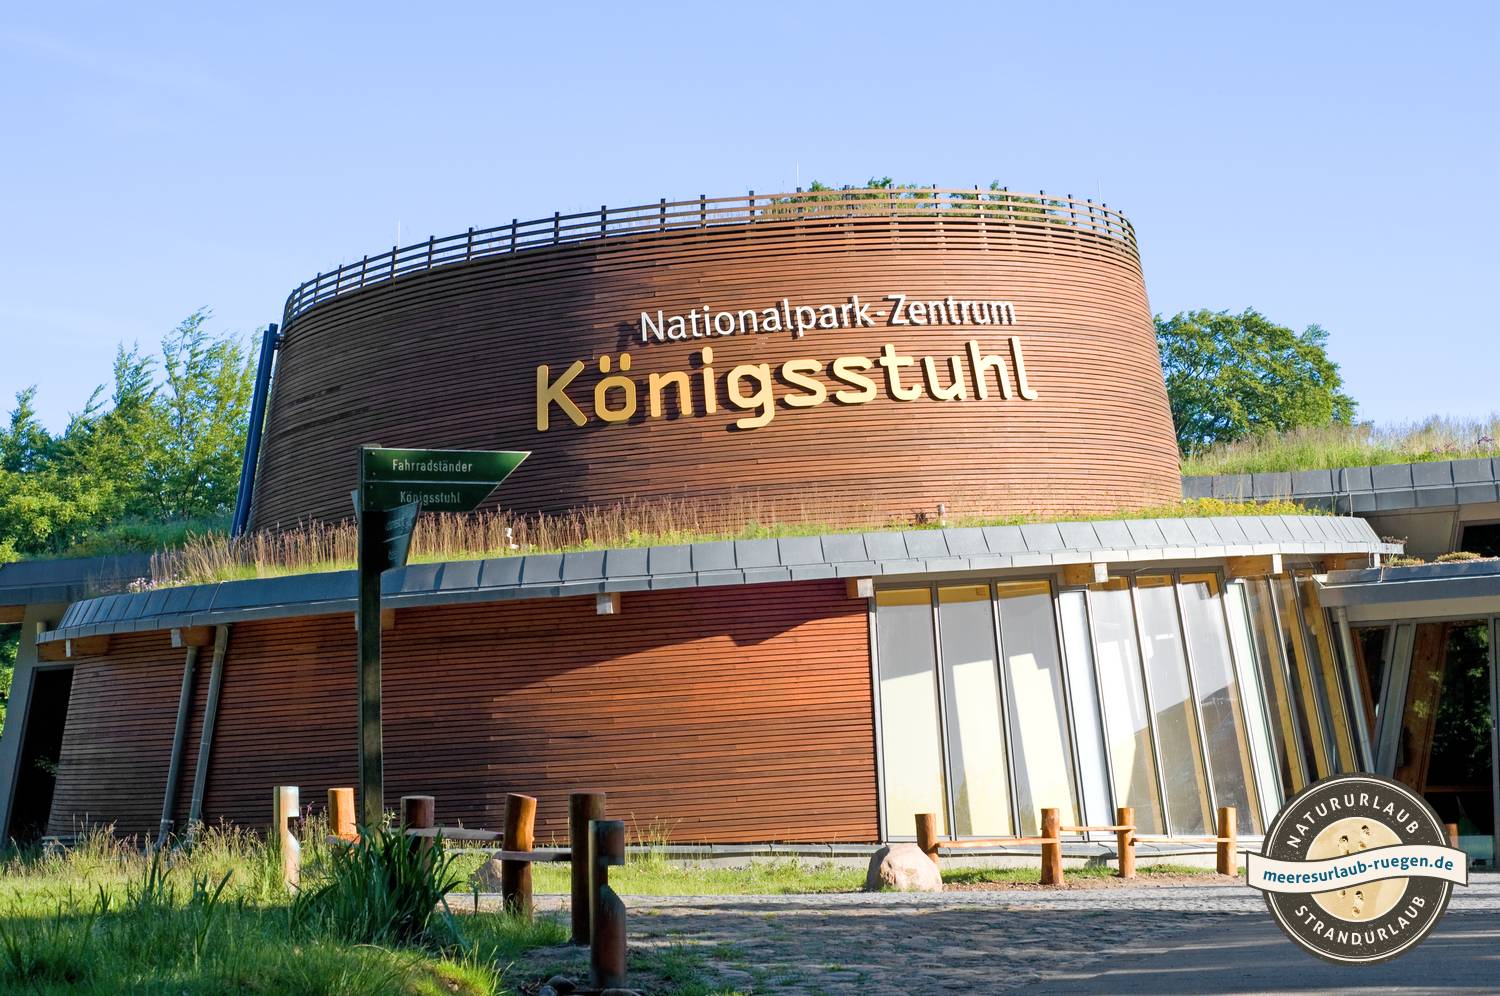 Das Nationalparkzentrum Königsstuhl mit einer tollen Ausstellung, ein Highlight unter den Museen der Insel Rügen